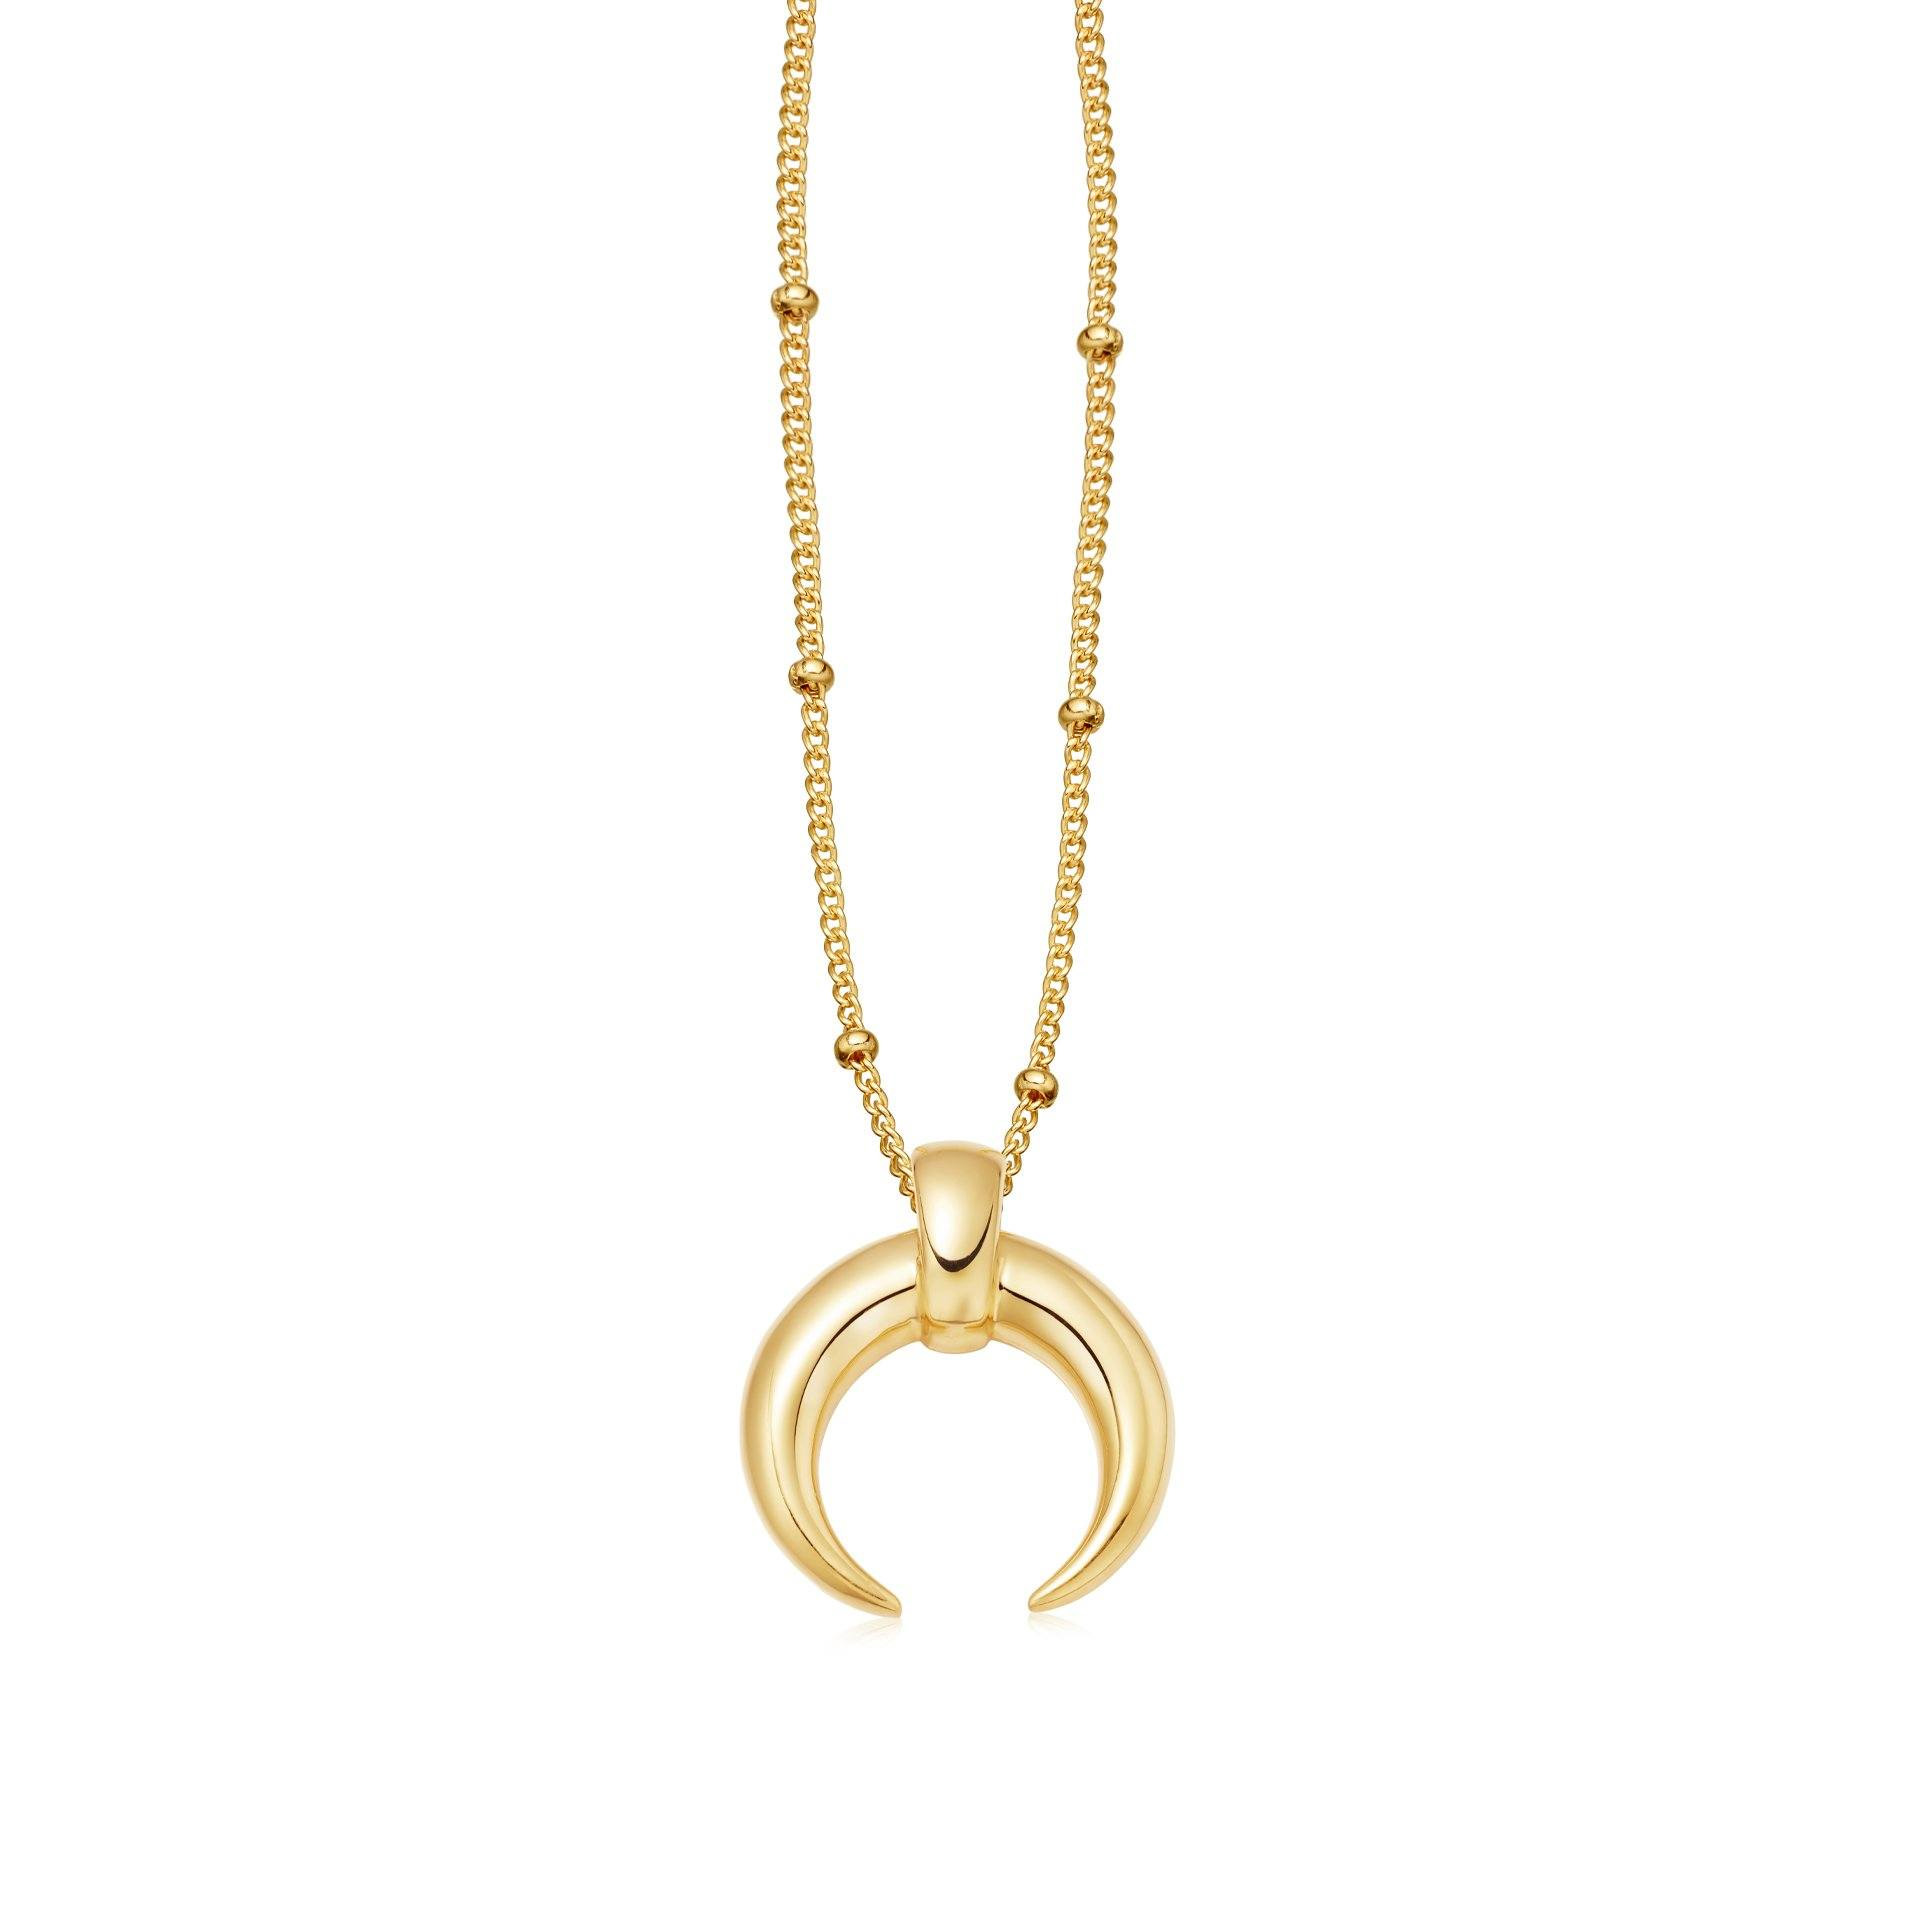 Groothandel OEM / ODM-juweliersware-ontwerp 18 sent goud-vermeil horing op ketting halssnoer Sterling Silwer juweliersware